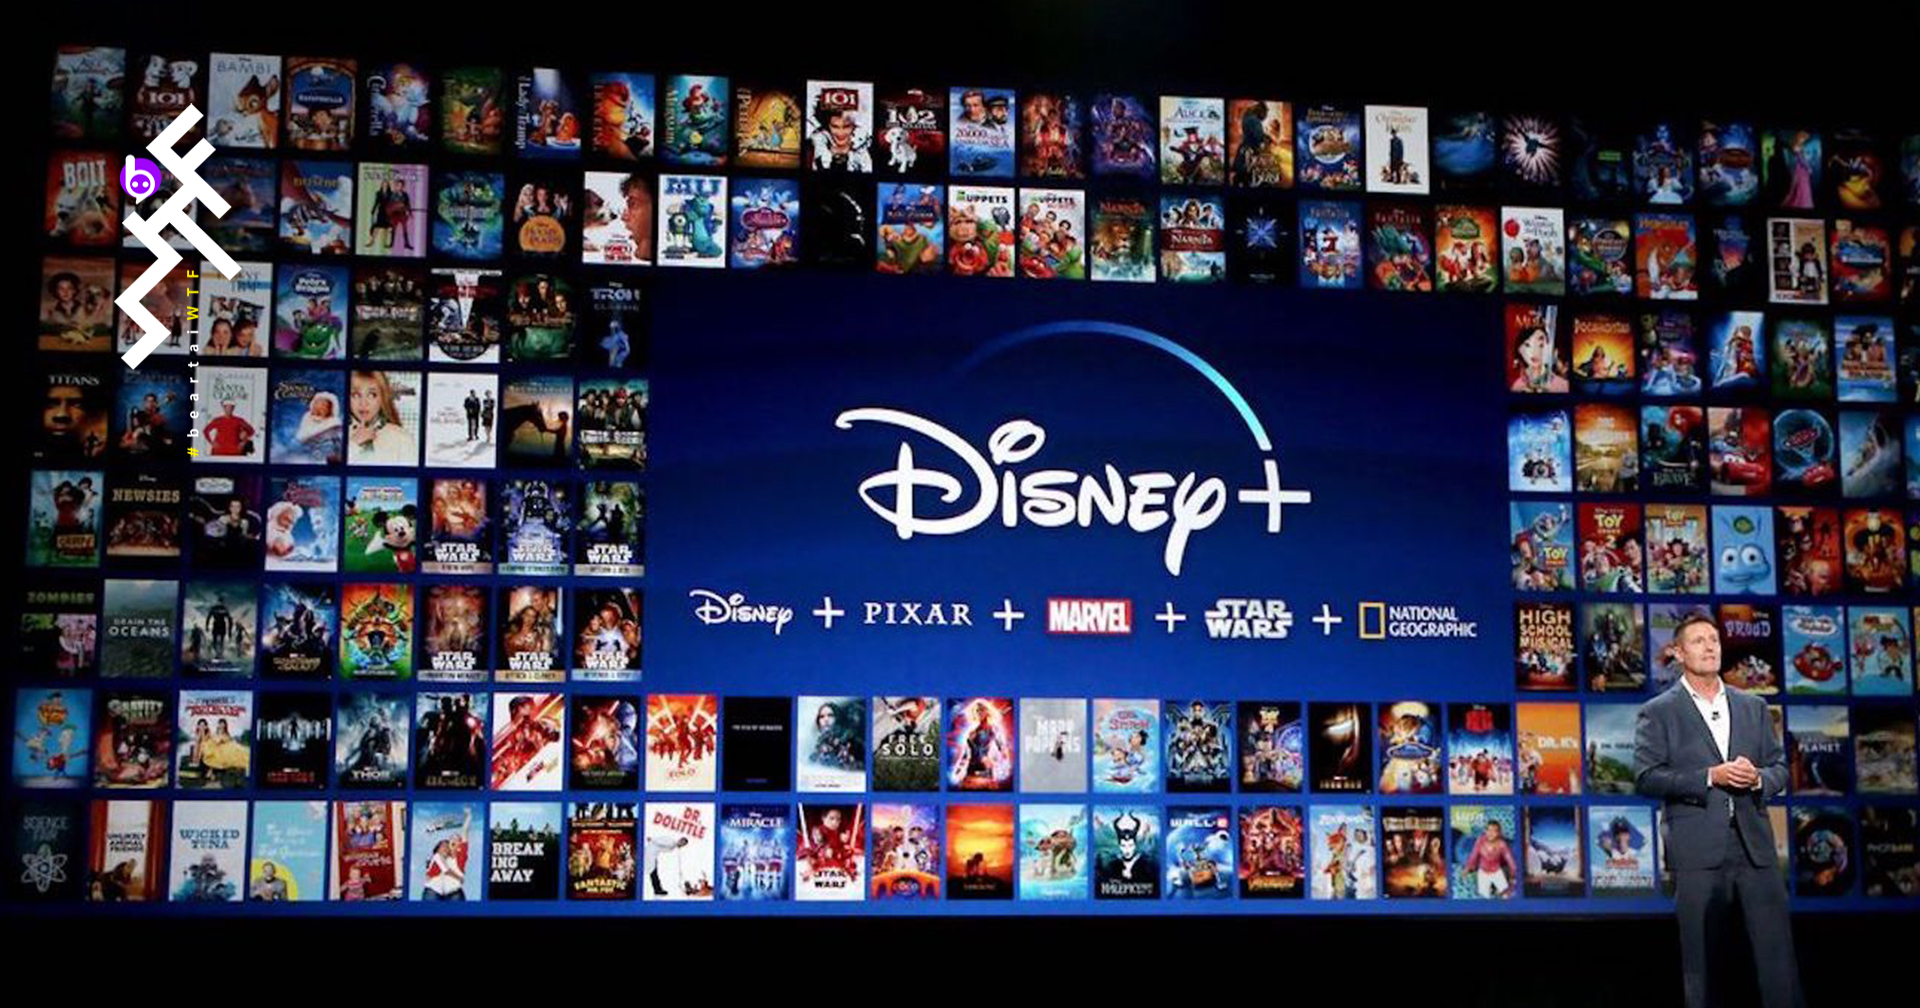 Disney+ เพิ่มคำแนะนำด้านเนื้อหา ให้กับหนังที่มีองค์ประกอบเกี่ยวกับการเหยียดเชื้อชาติ